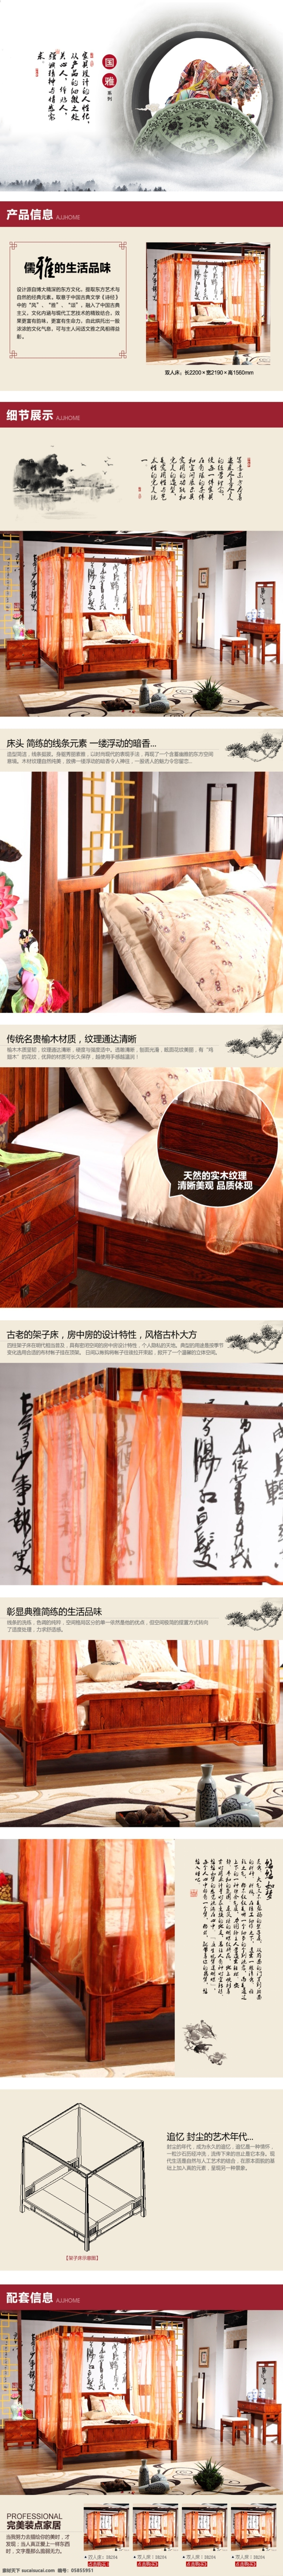 古典 中式 风格 实木 床 详情 中式双人床 古典家具 实木家具 中式家具详情 中国风 白色